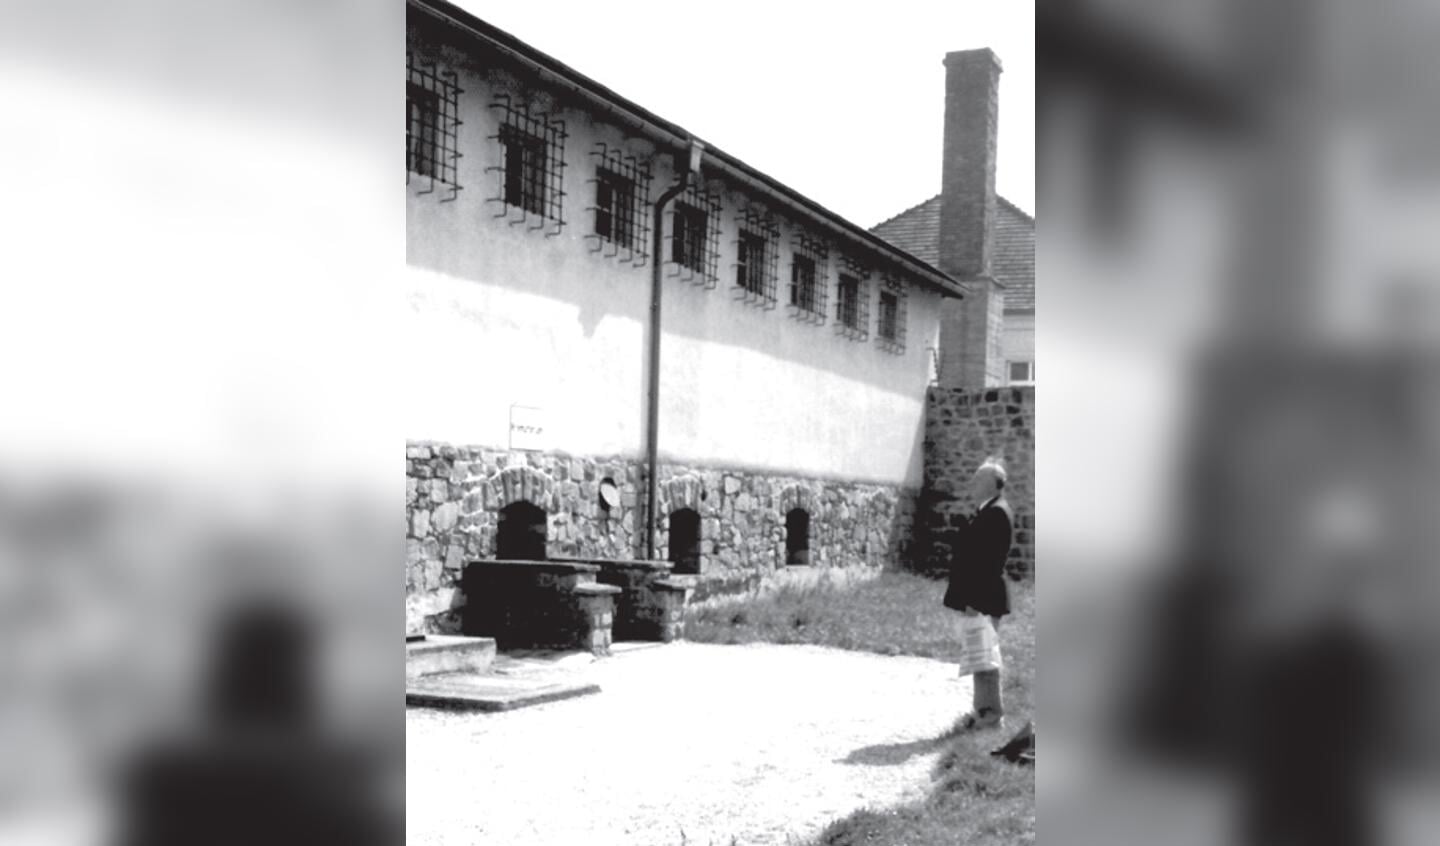 Foto: Dourlein Mauthausen 1976 (foto ervan Dourlein)

In juni 1976 legde Pieter Dourlein tijdens een emotioneel bezoek aan Mauthausen een orchidee

op de gedenksteen als groet aan zijn kameraden. Pieter overleed enkele weken later. (bron: familiearchief erven Dourlein)